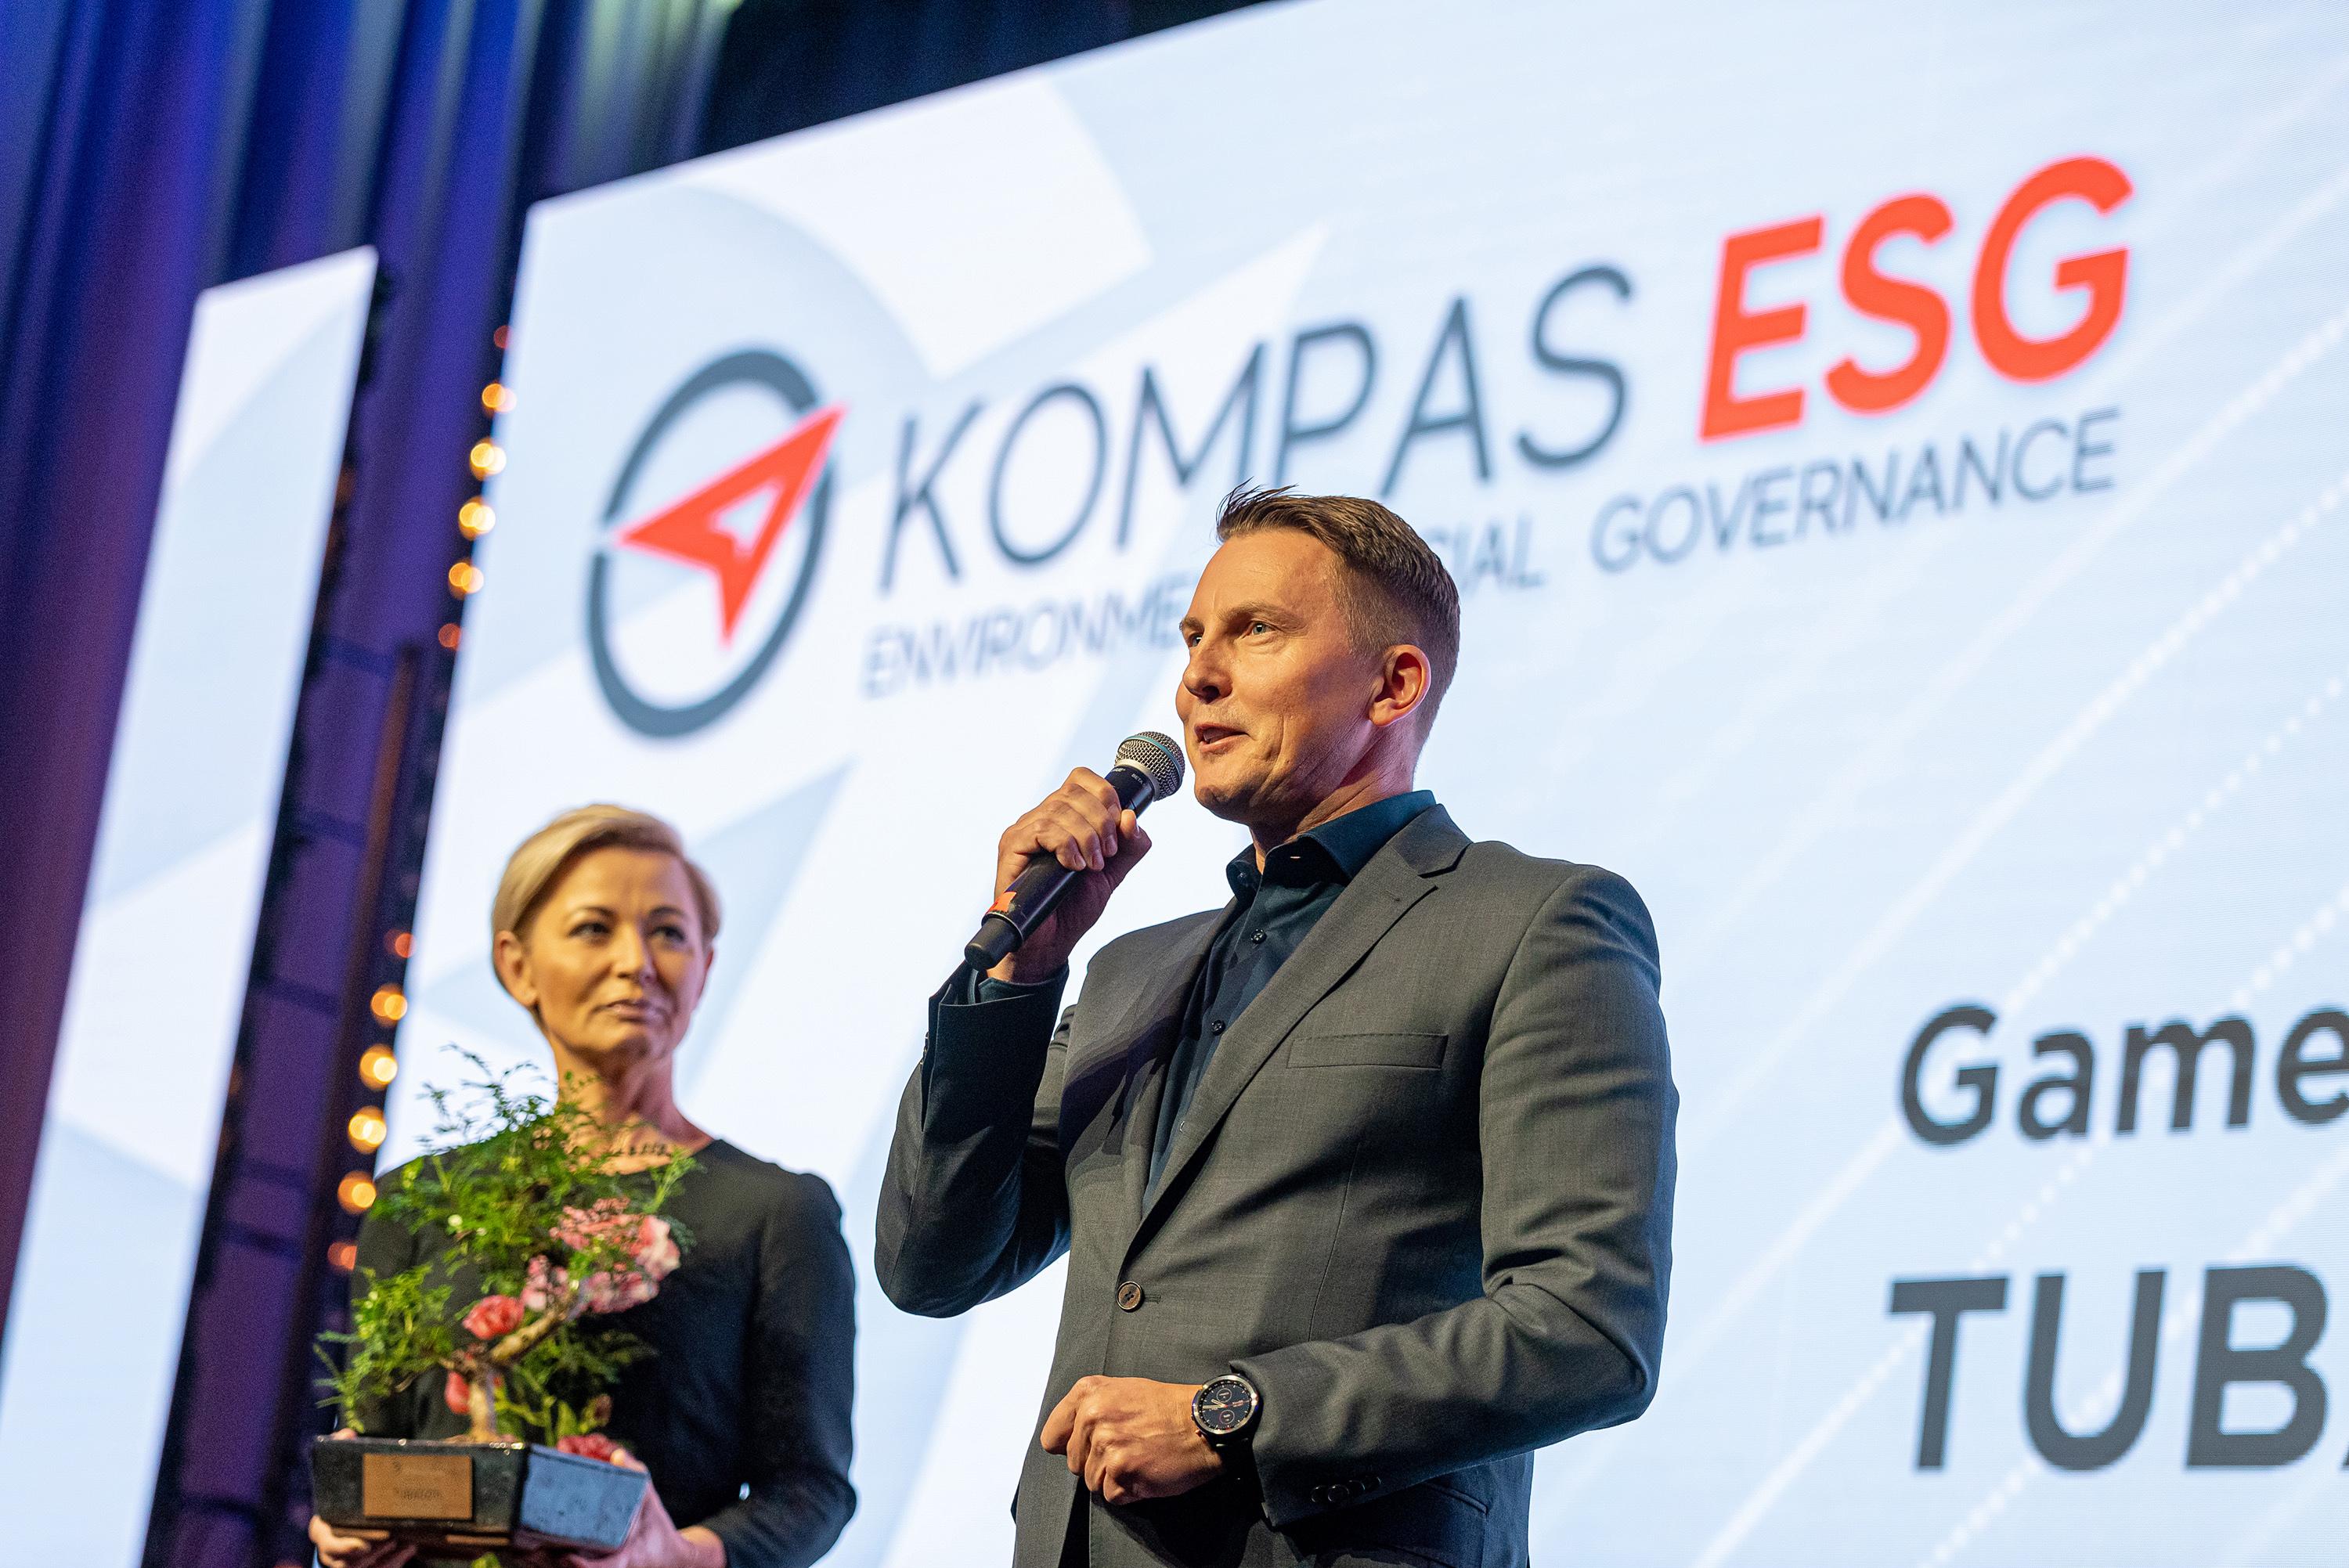 Grupa Tubądzin otrzymała nagrodę KOMPAS ESG w kategorii Game Changer